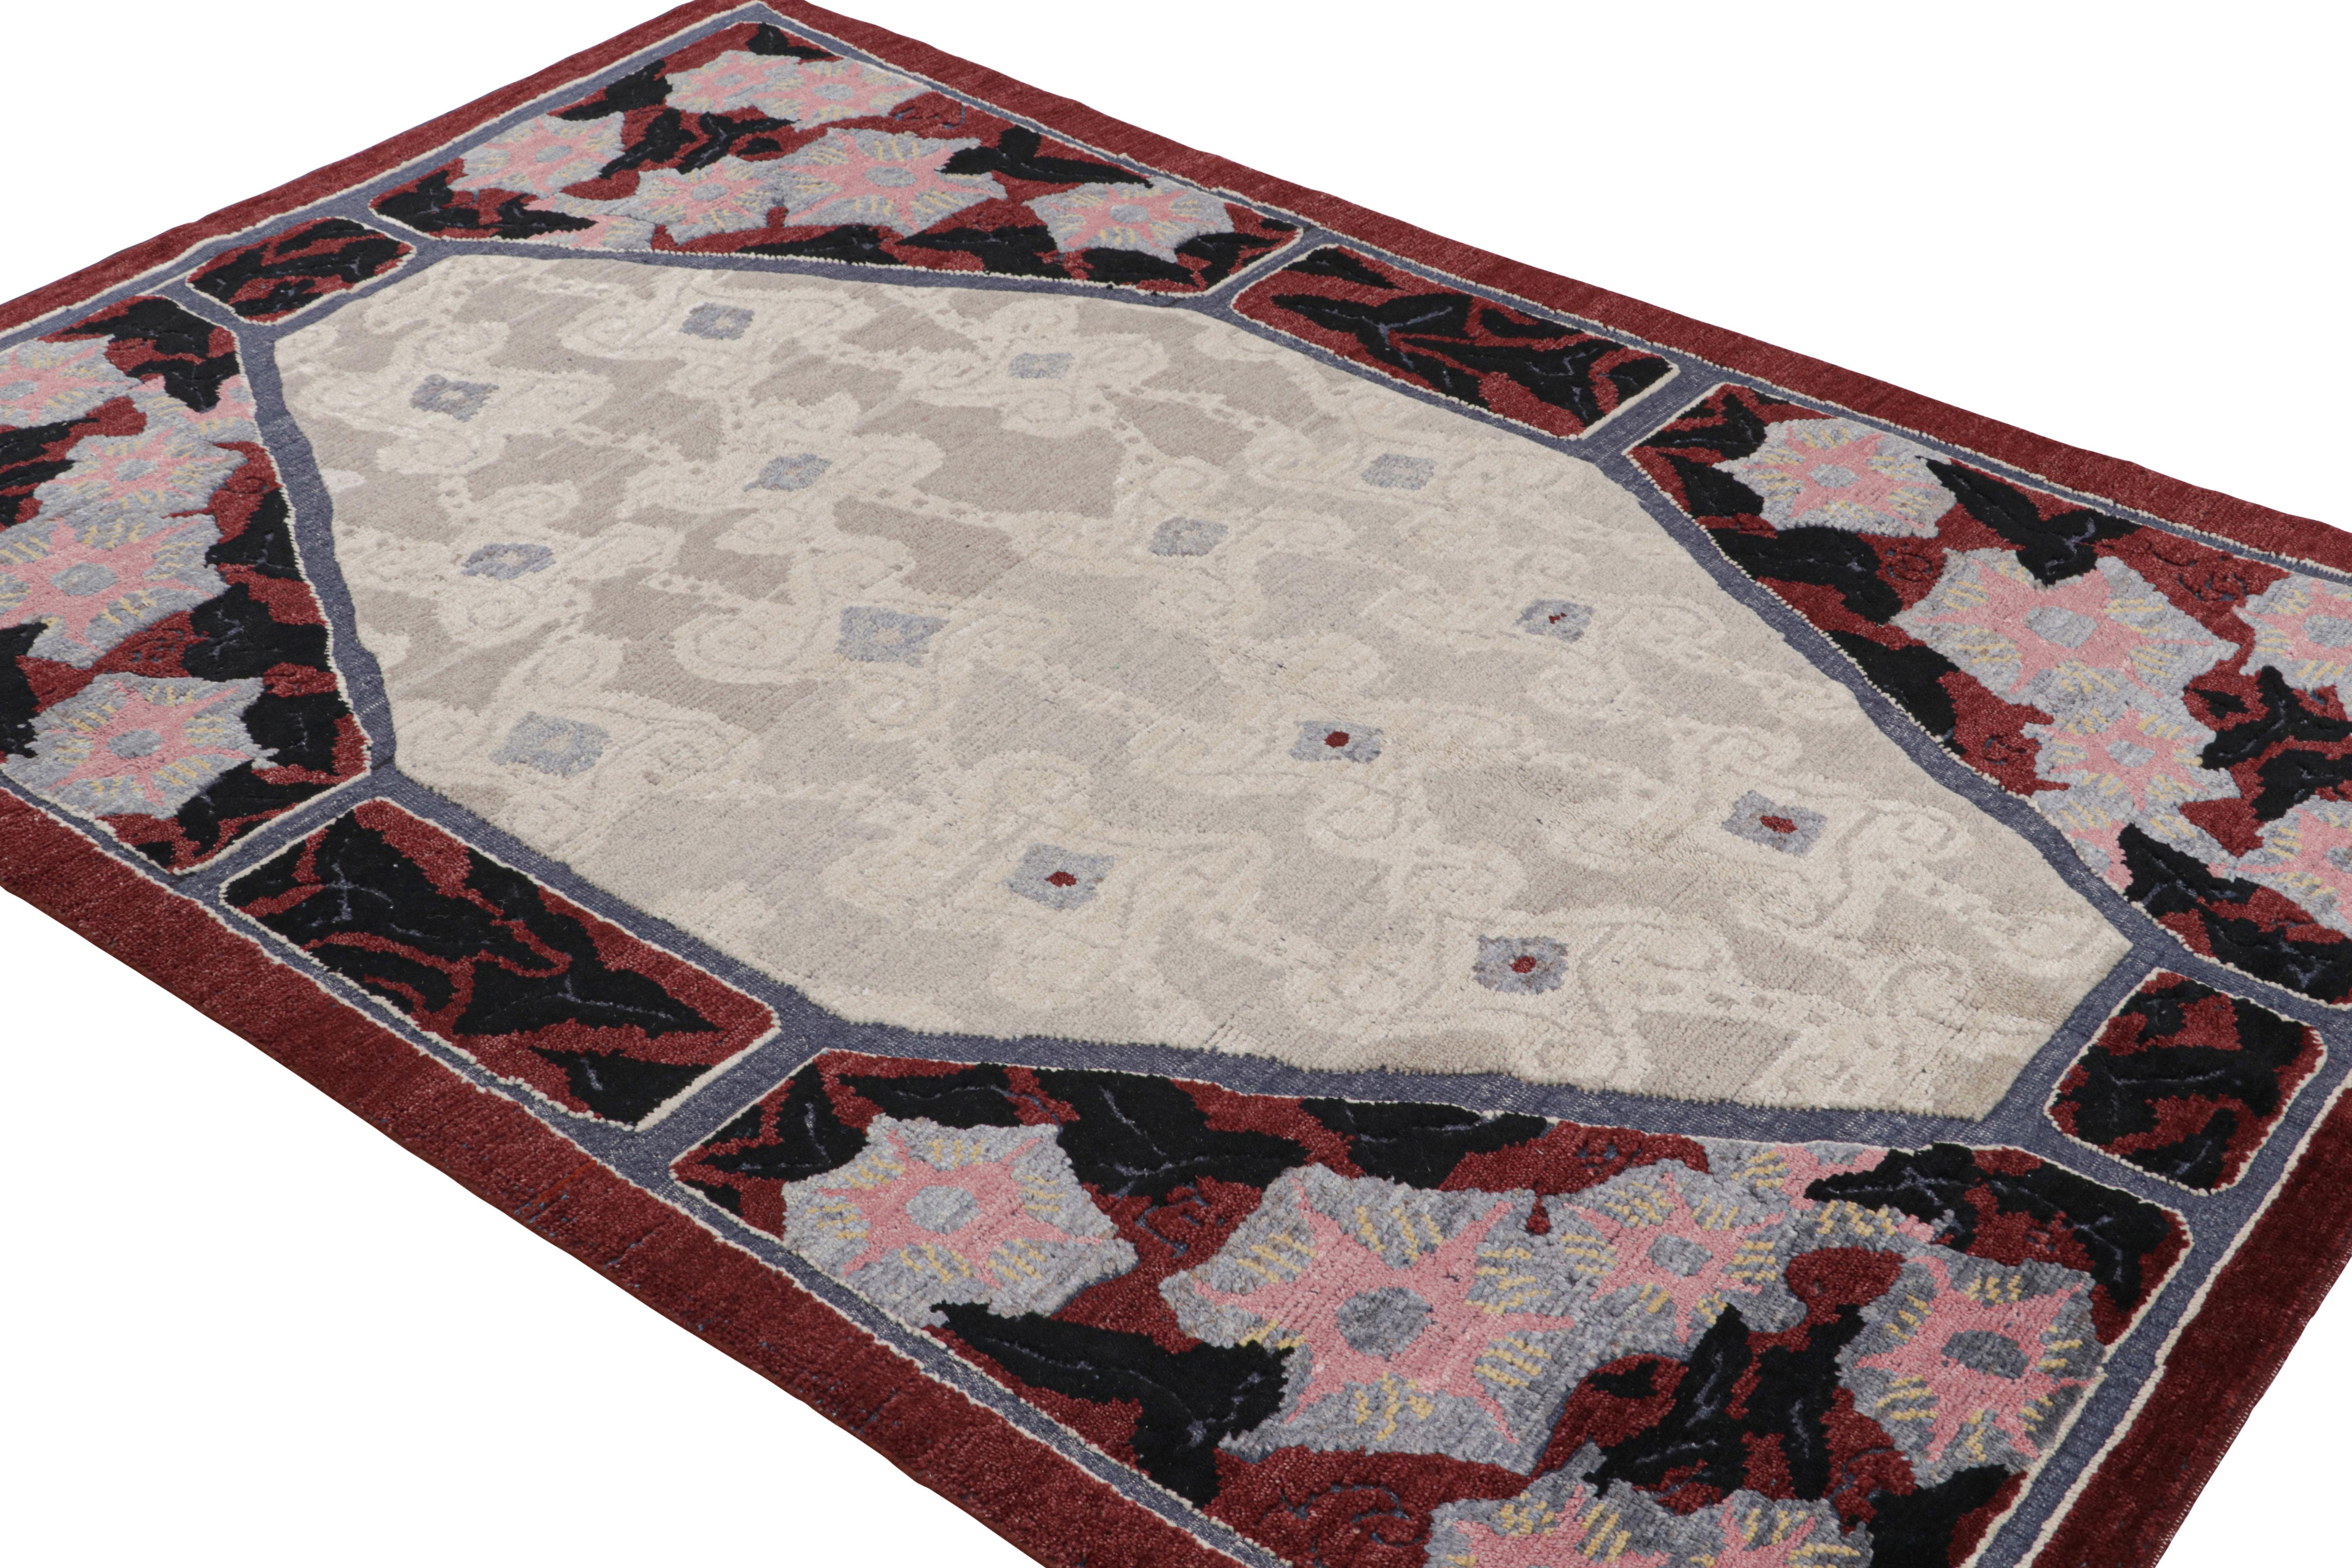 Dieser 6x9 große französische Art-Déco-Teppich ist aus Wolle handgeknüpft und zeichnet sich durch ein interessantes Spiel aus Rot und Beige-Grau in den geometrischen Mustern aus.
 
Über das Design: 

Bewunderer des Handwerks werden die subtile